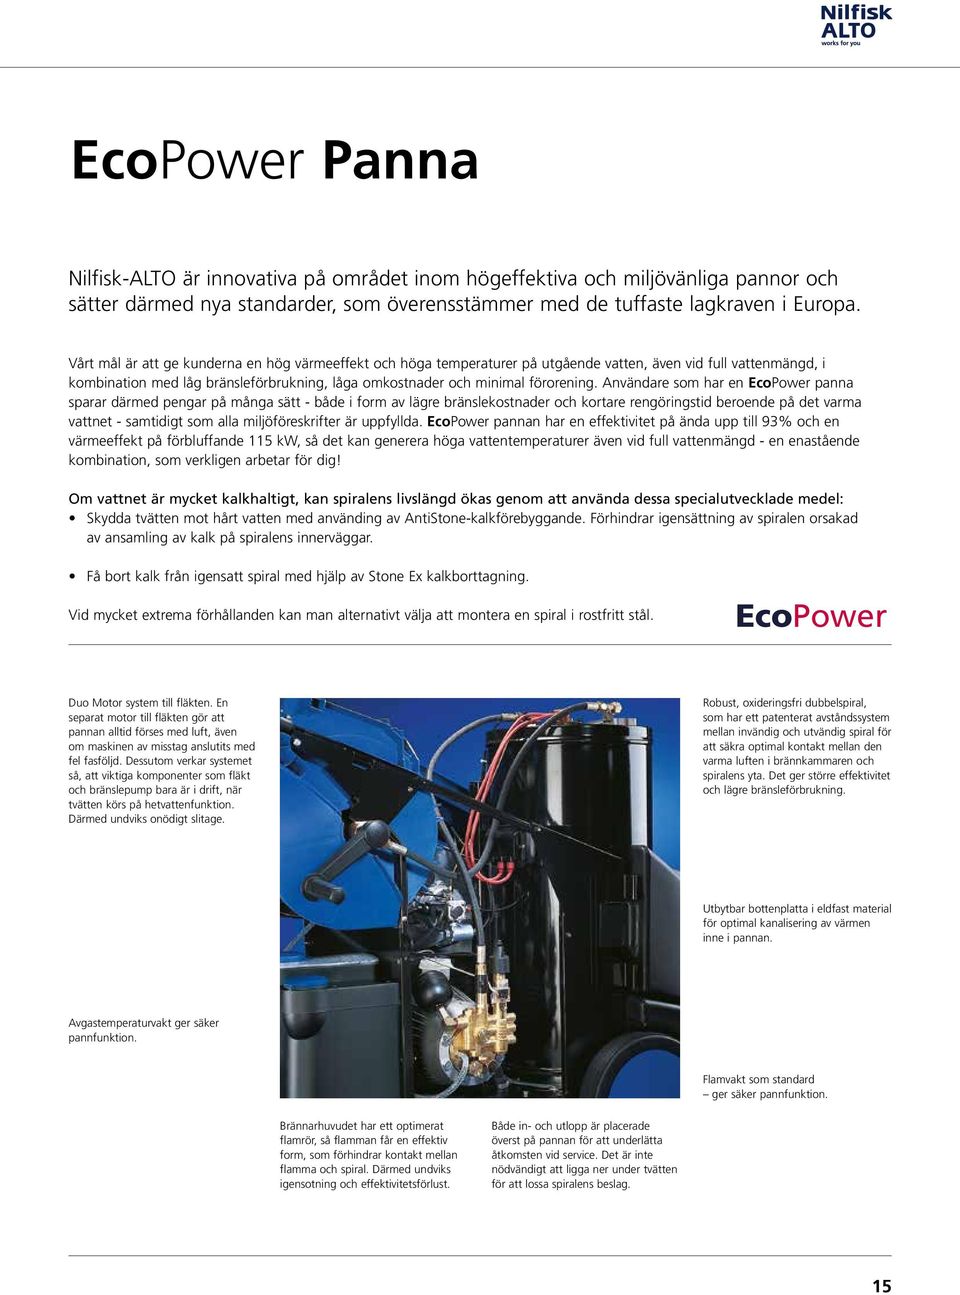 Användare som har en EcoPower panna sparar därmed pengar på många sätt - både i form av lägre bränslekostnader och kortare rengöringstid beroende på det varma vattnet - samtidigt som alla